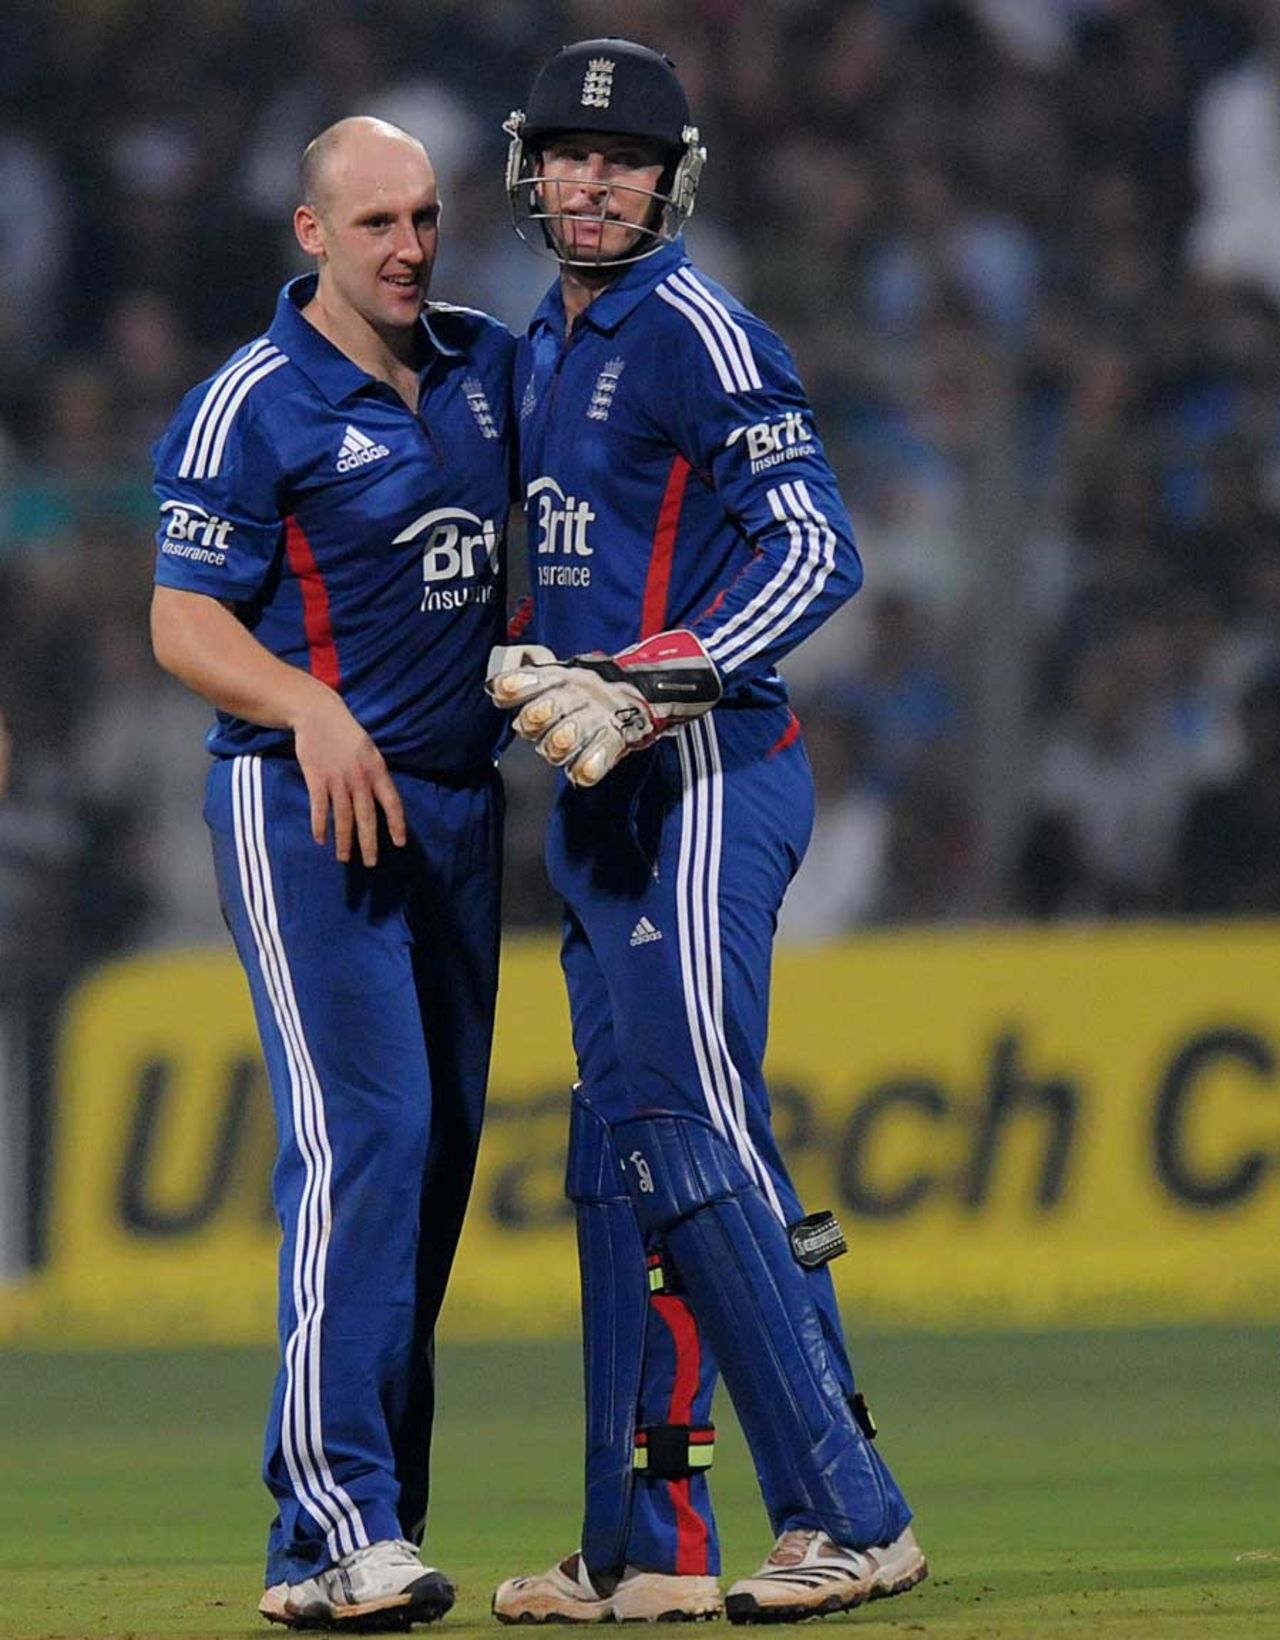 James Tredwell bowled economically, India v England, 2nd Twenty20 international, Mumbai, December 22, 2012